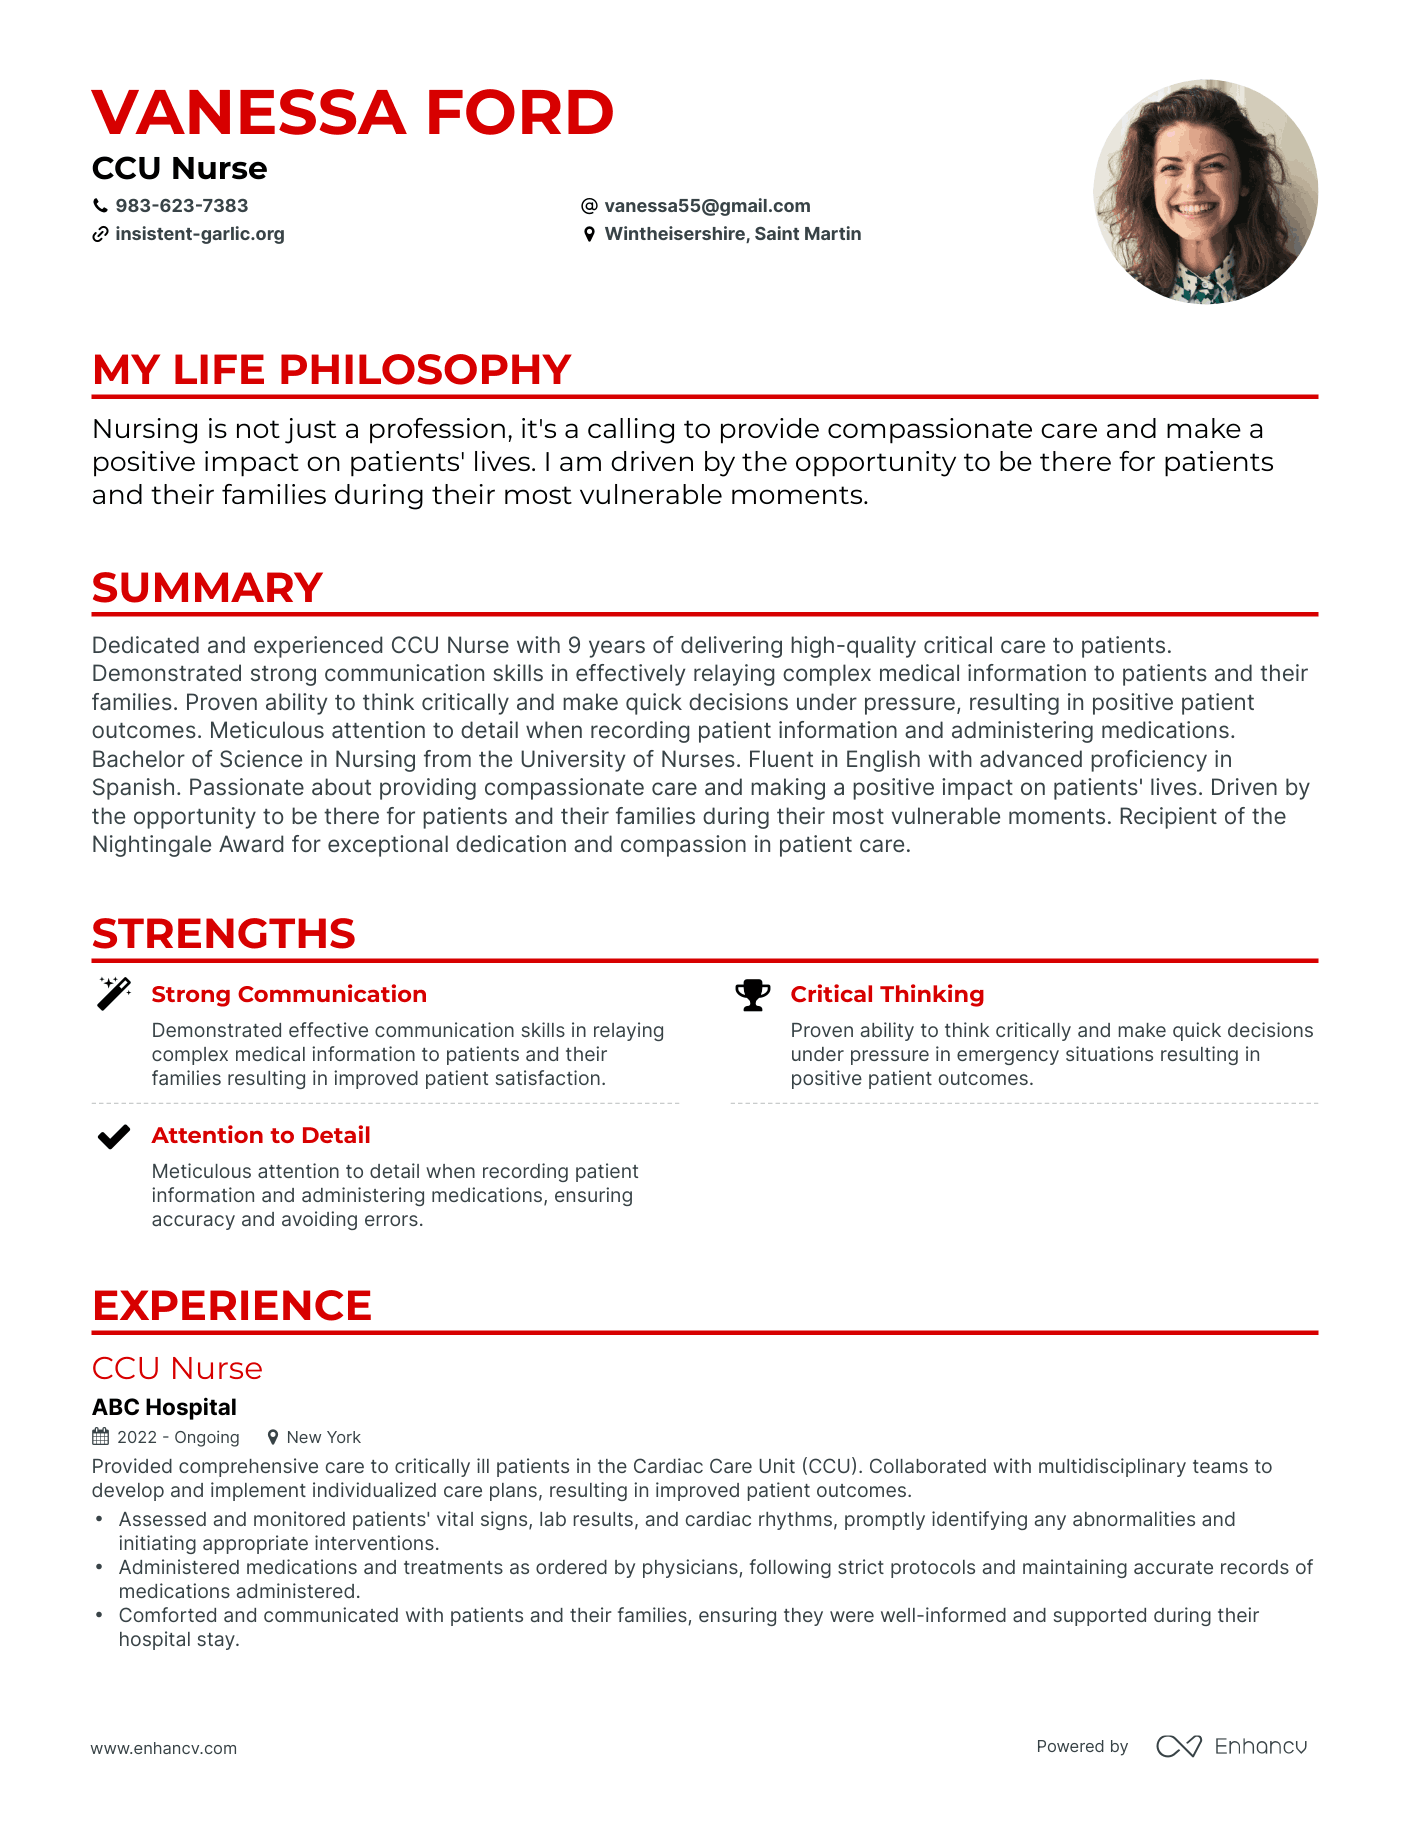 Creative CCU Nurse Resume Example